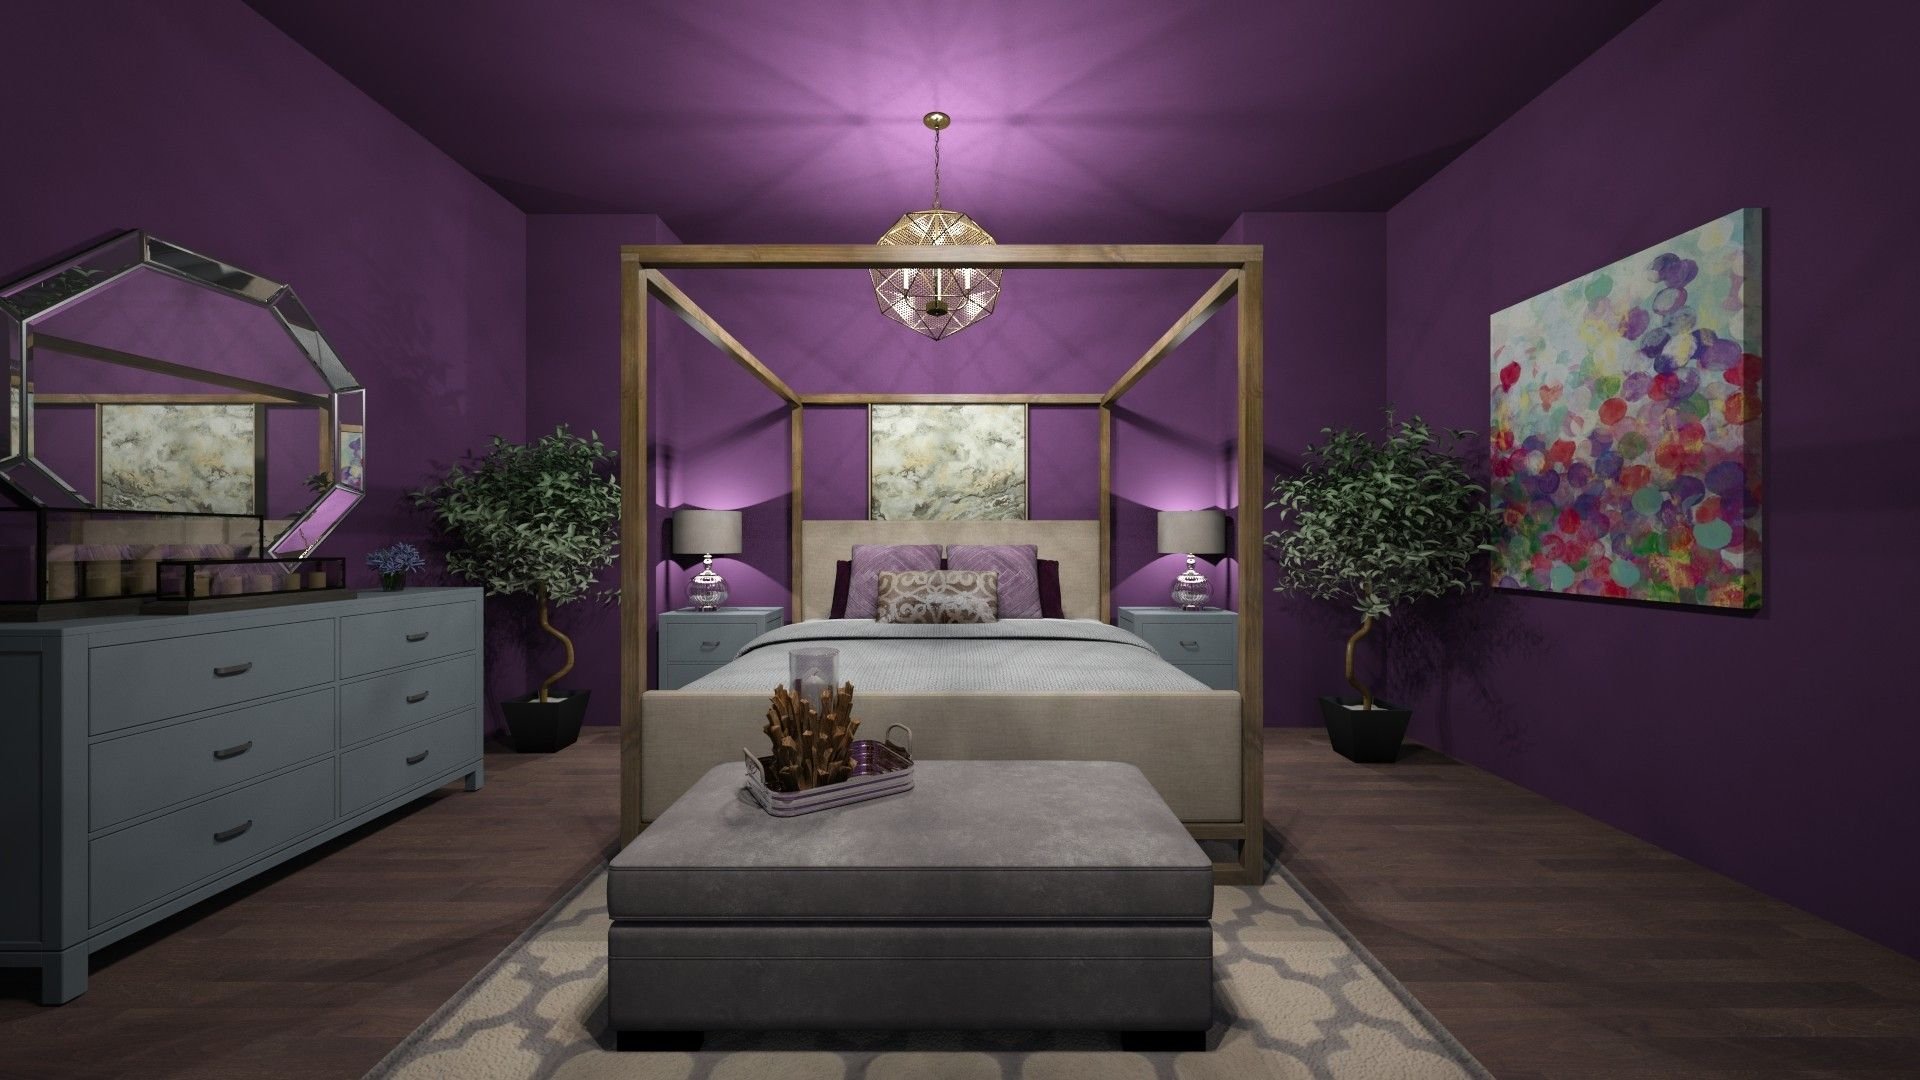 Обои фиолетового цвета в интерьере: виды, дизайн, подбор штор, 70 фото